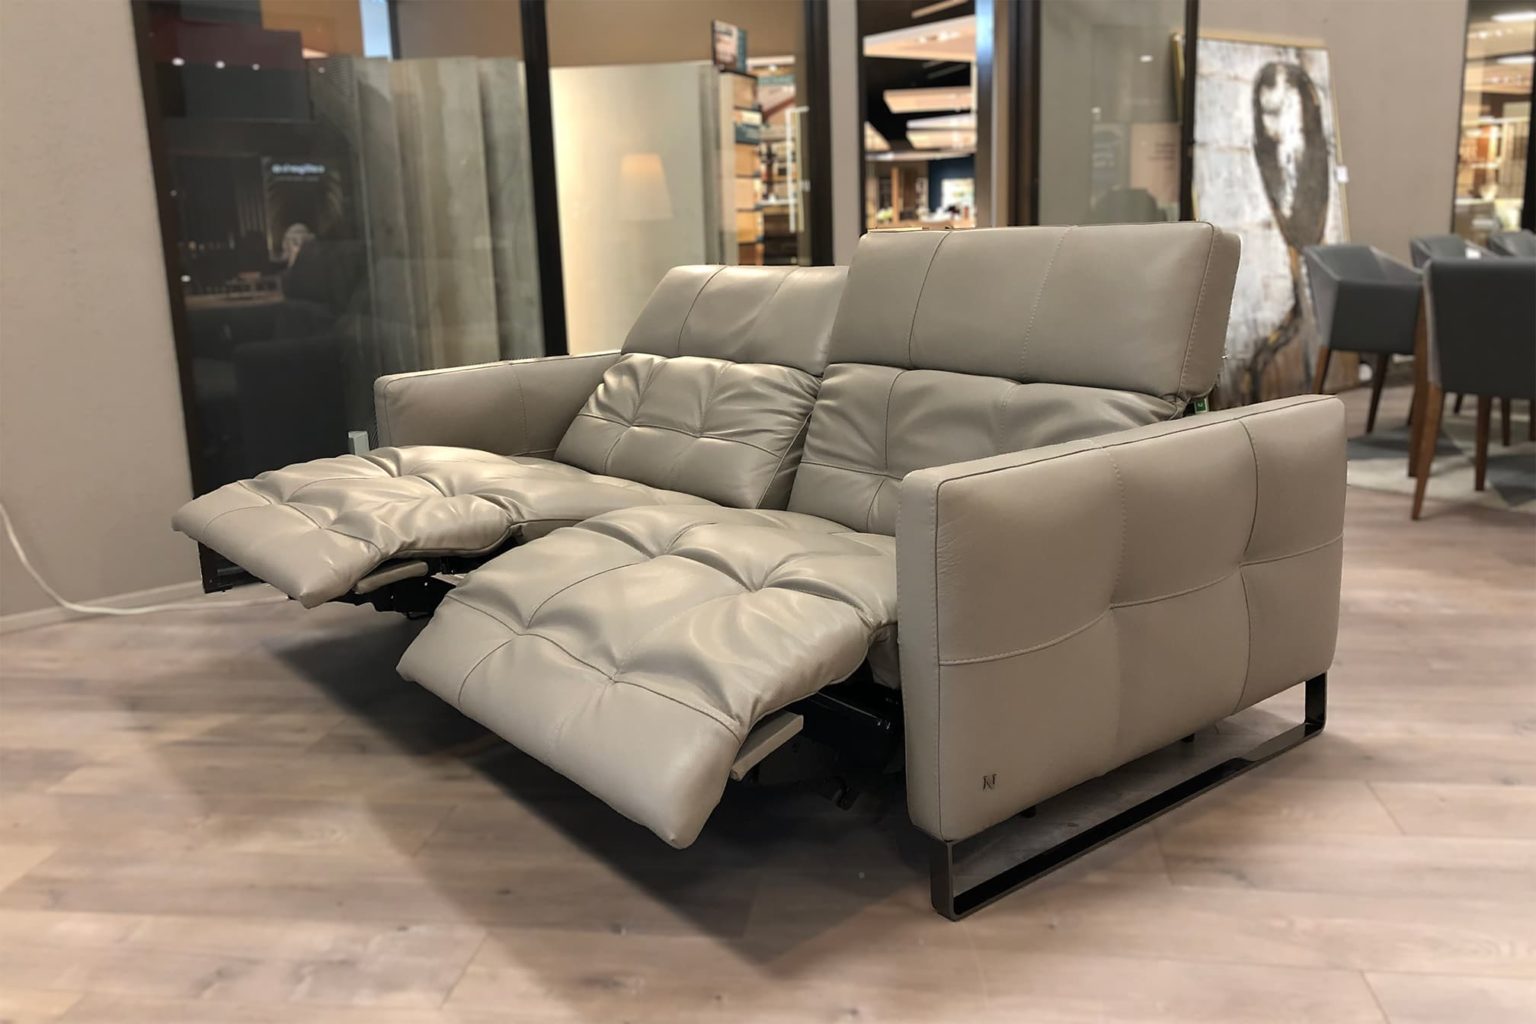 natuzzi capriccio sofa bed price